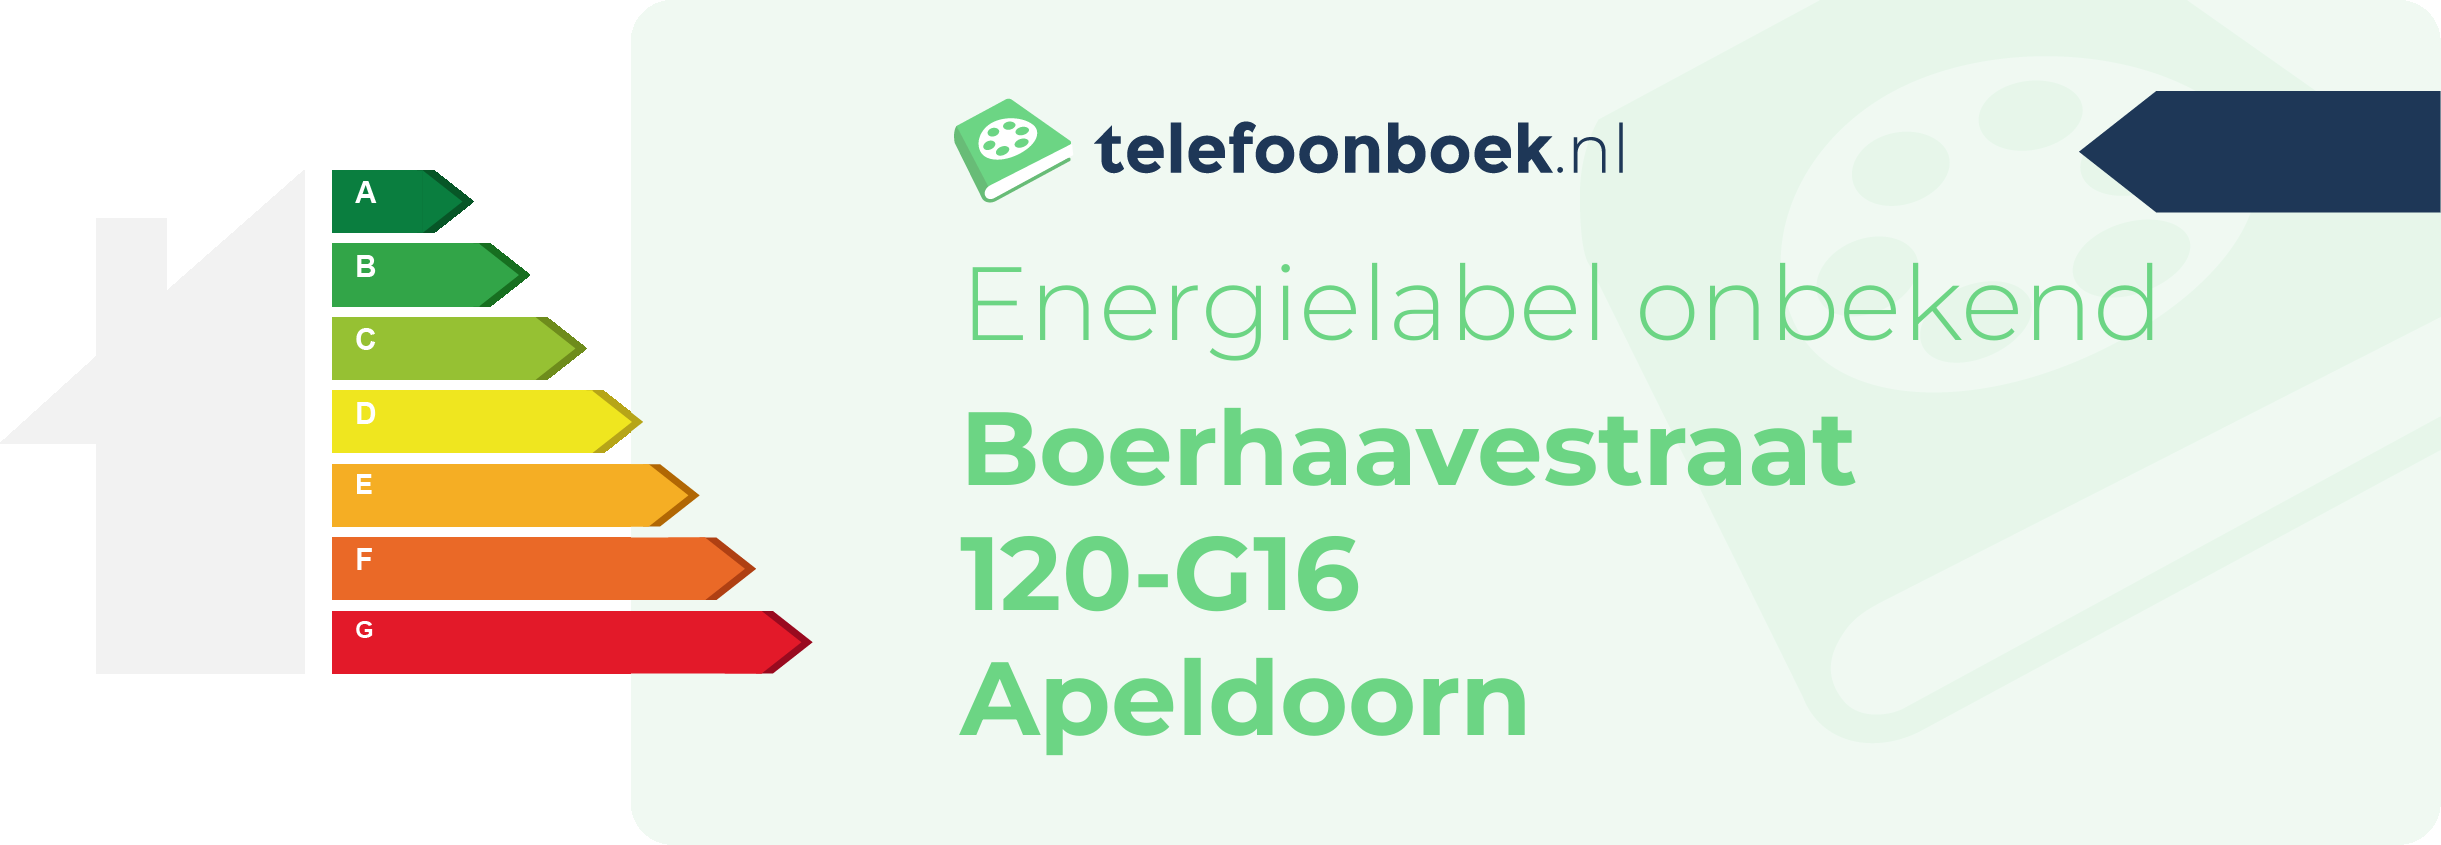 Energielabel Boerhaavestraat 120-G16 Apeldoorn